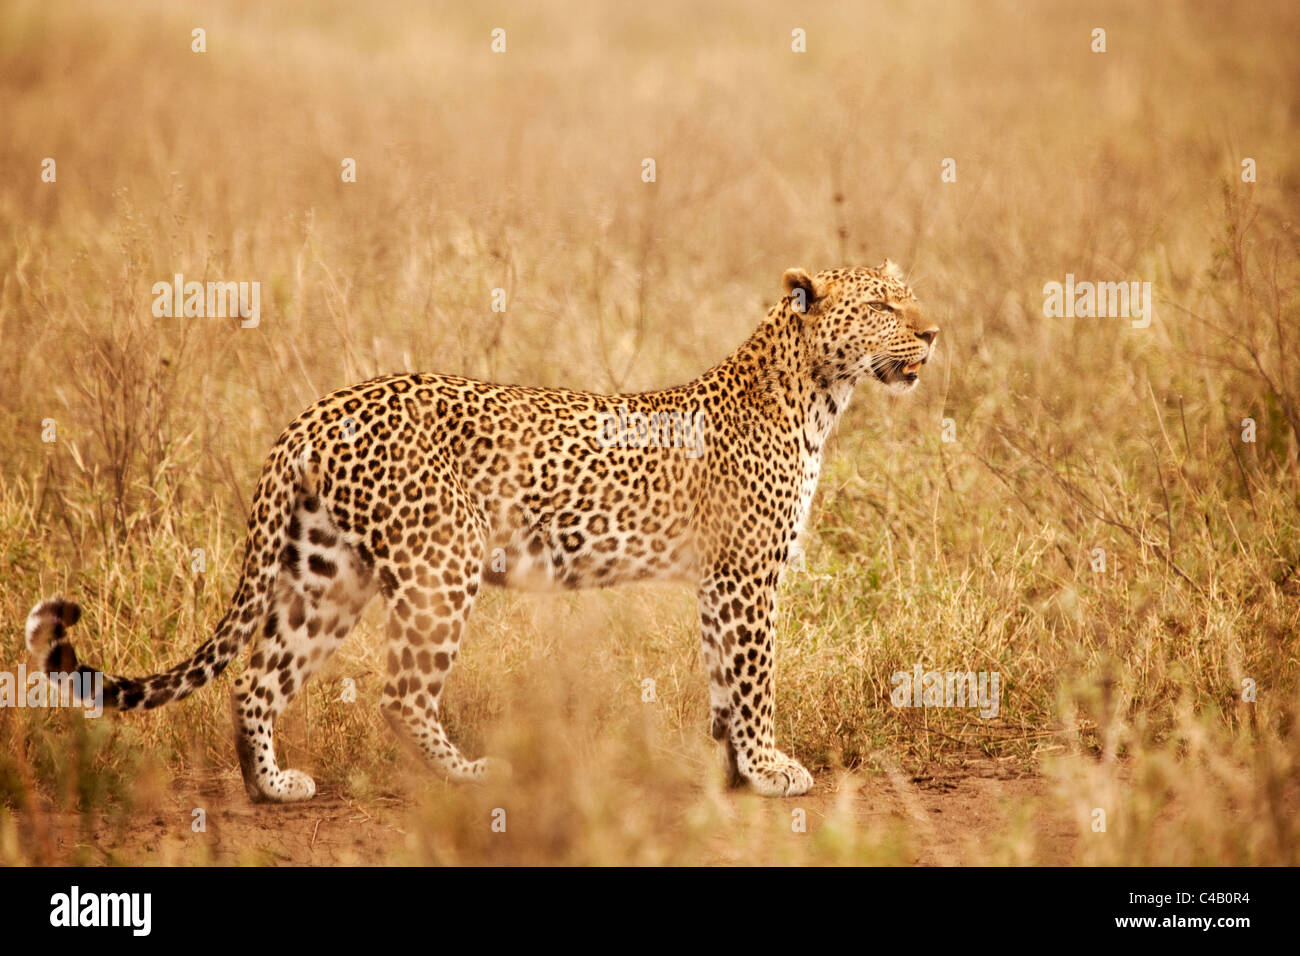 La Tanzanie, Serengeti. Un léopard est hardiment dans les longues herbes près de Seronera. Banque D'Images